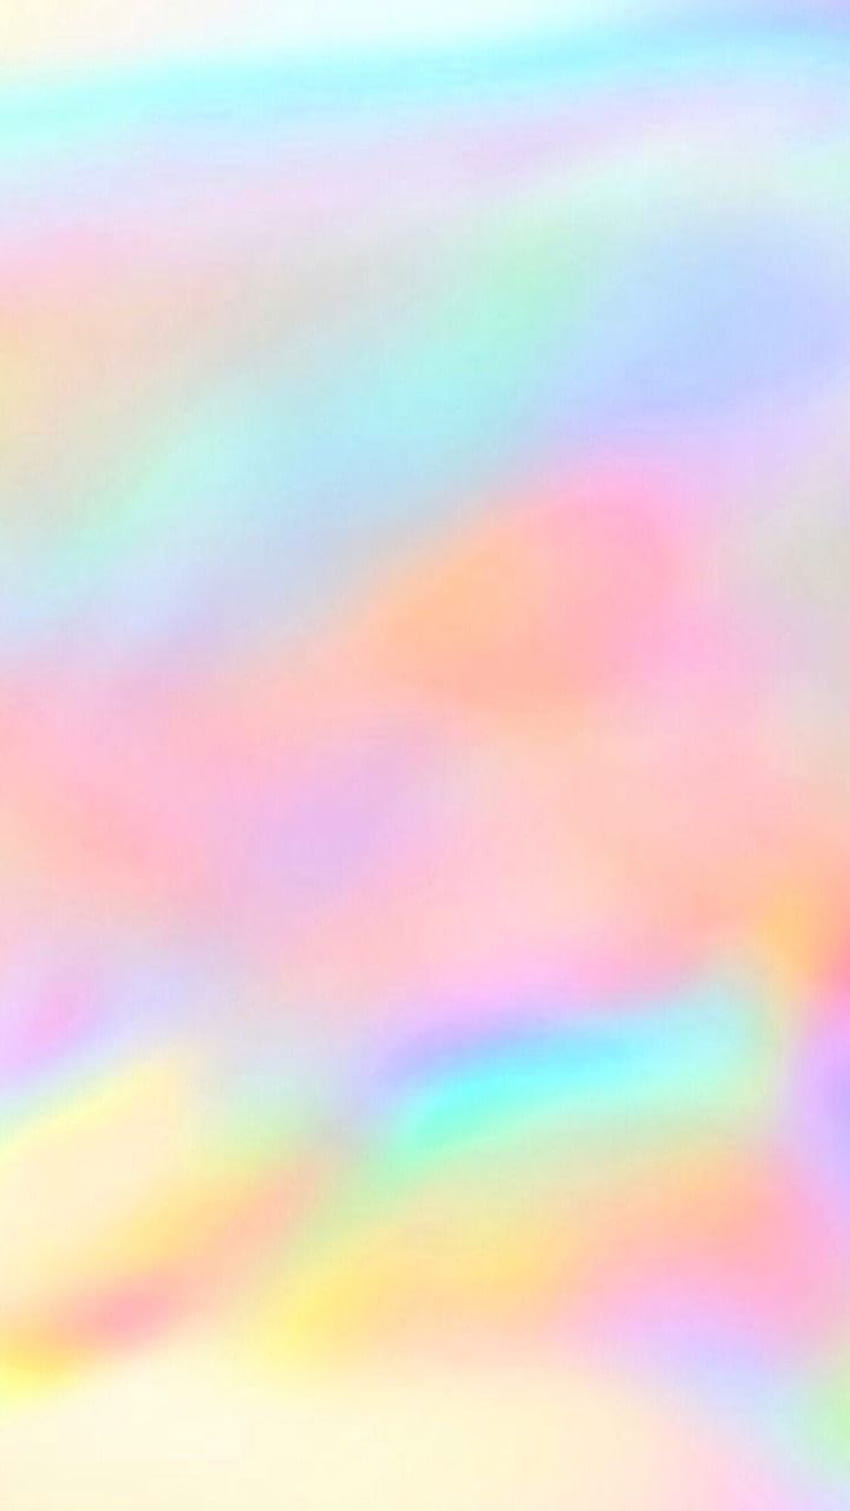 虹 虹のロック画面 虹のロック画面 虹 虹 虹の背景 虹の背景。 Hari ayah, Latar belakang, Foto abstrak, Pastel Rainbow HD電話の壁紙